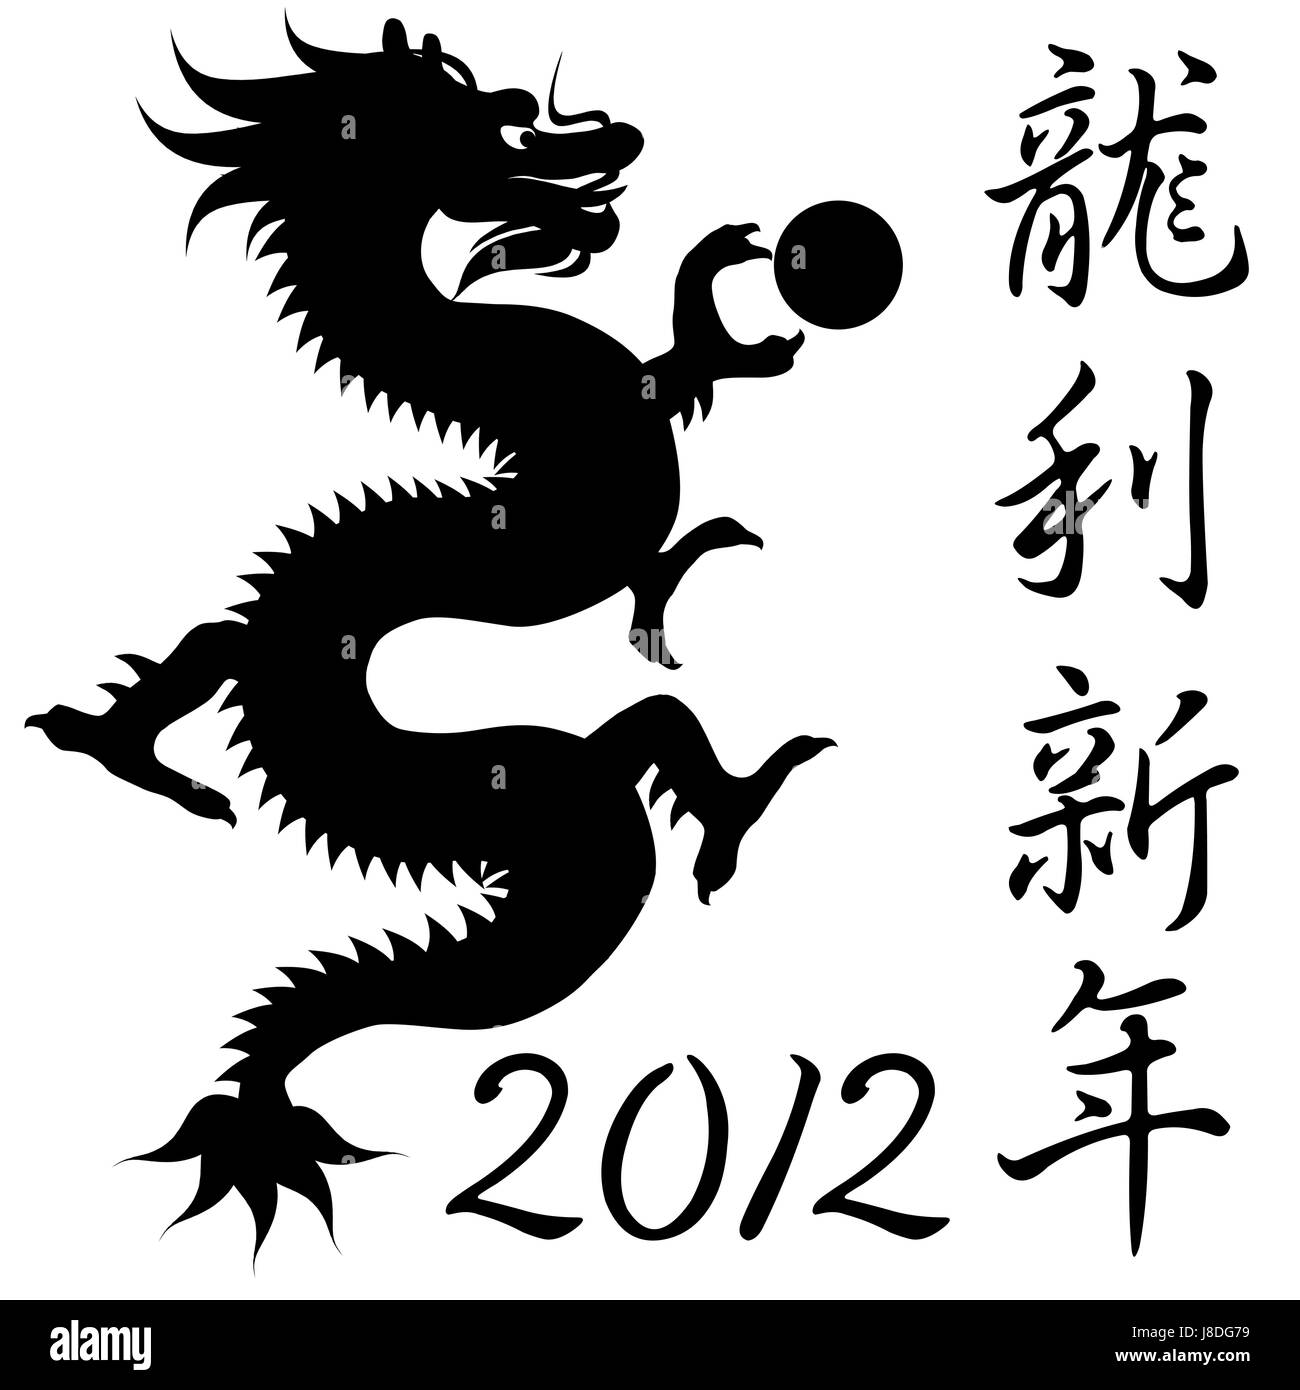 Какой наступает год какого дракона. Китайский символ дракона. Год дракона 2012. 2012 Год черного водяного дракона. Дракон символ 2012.